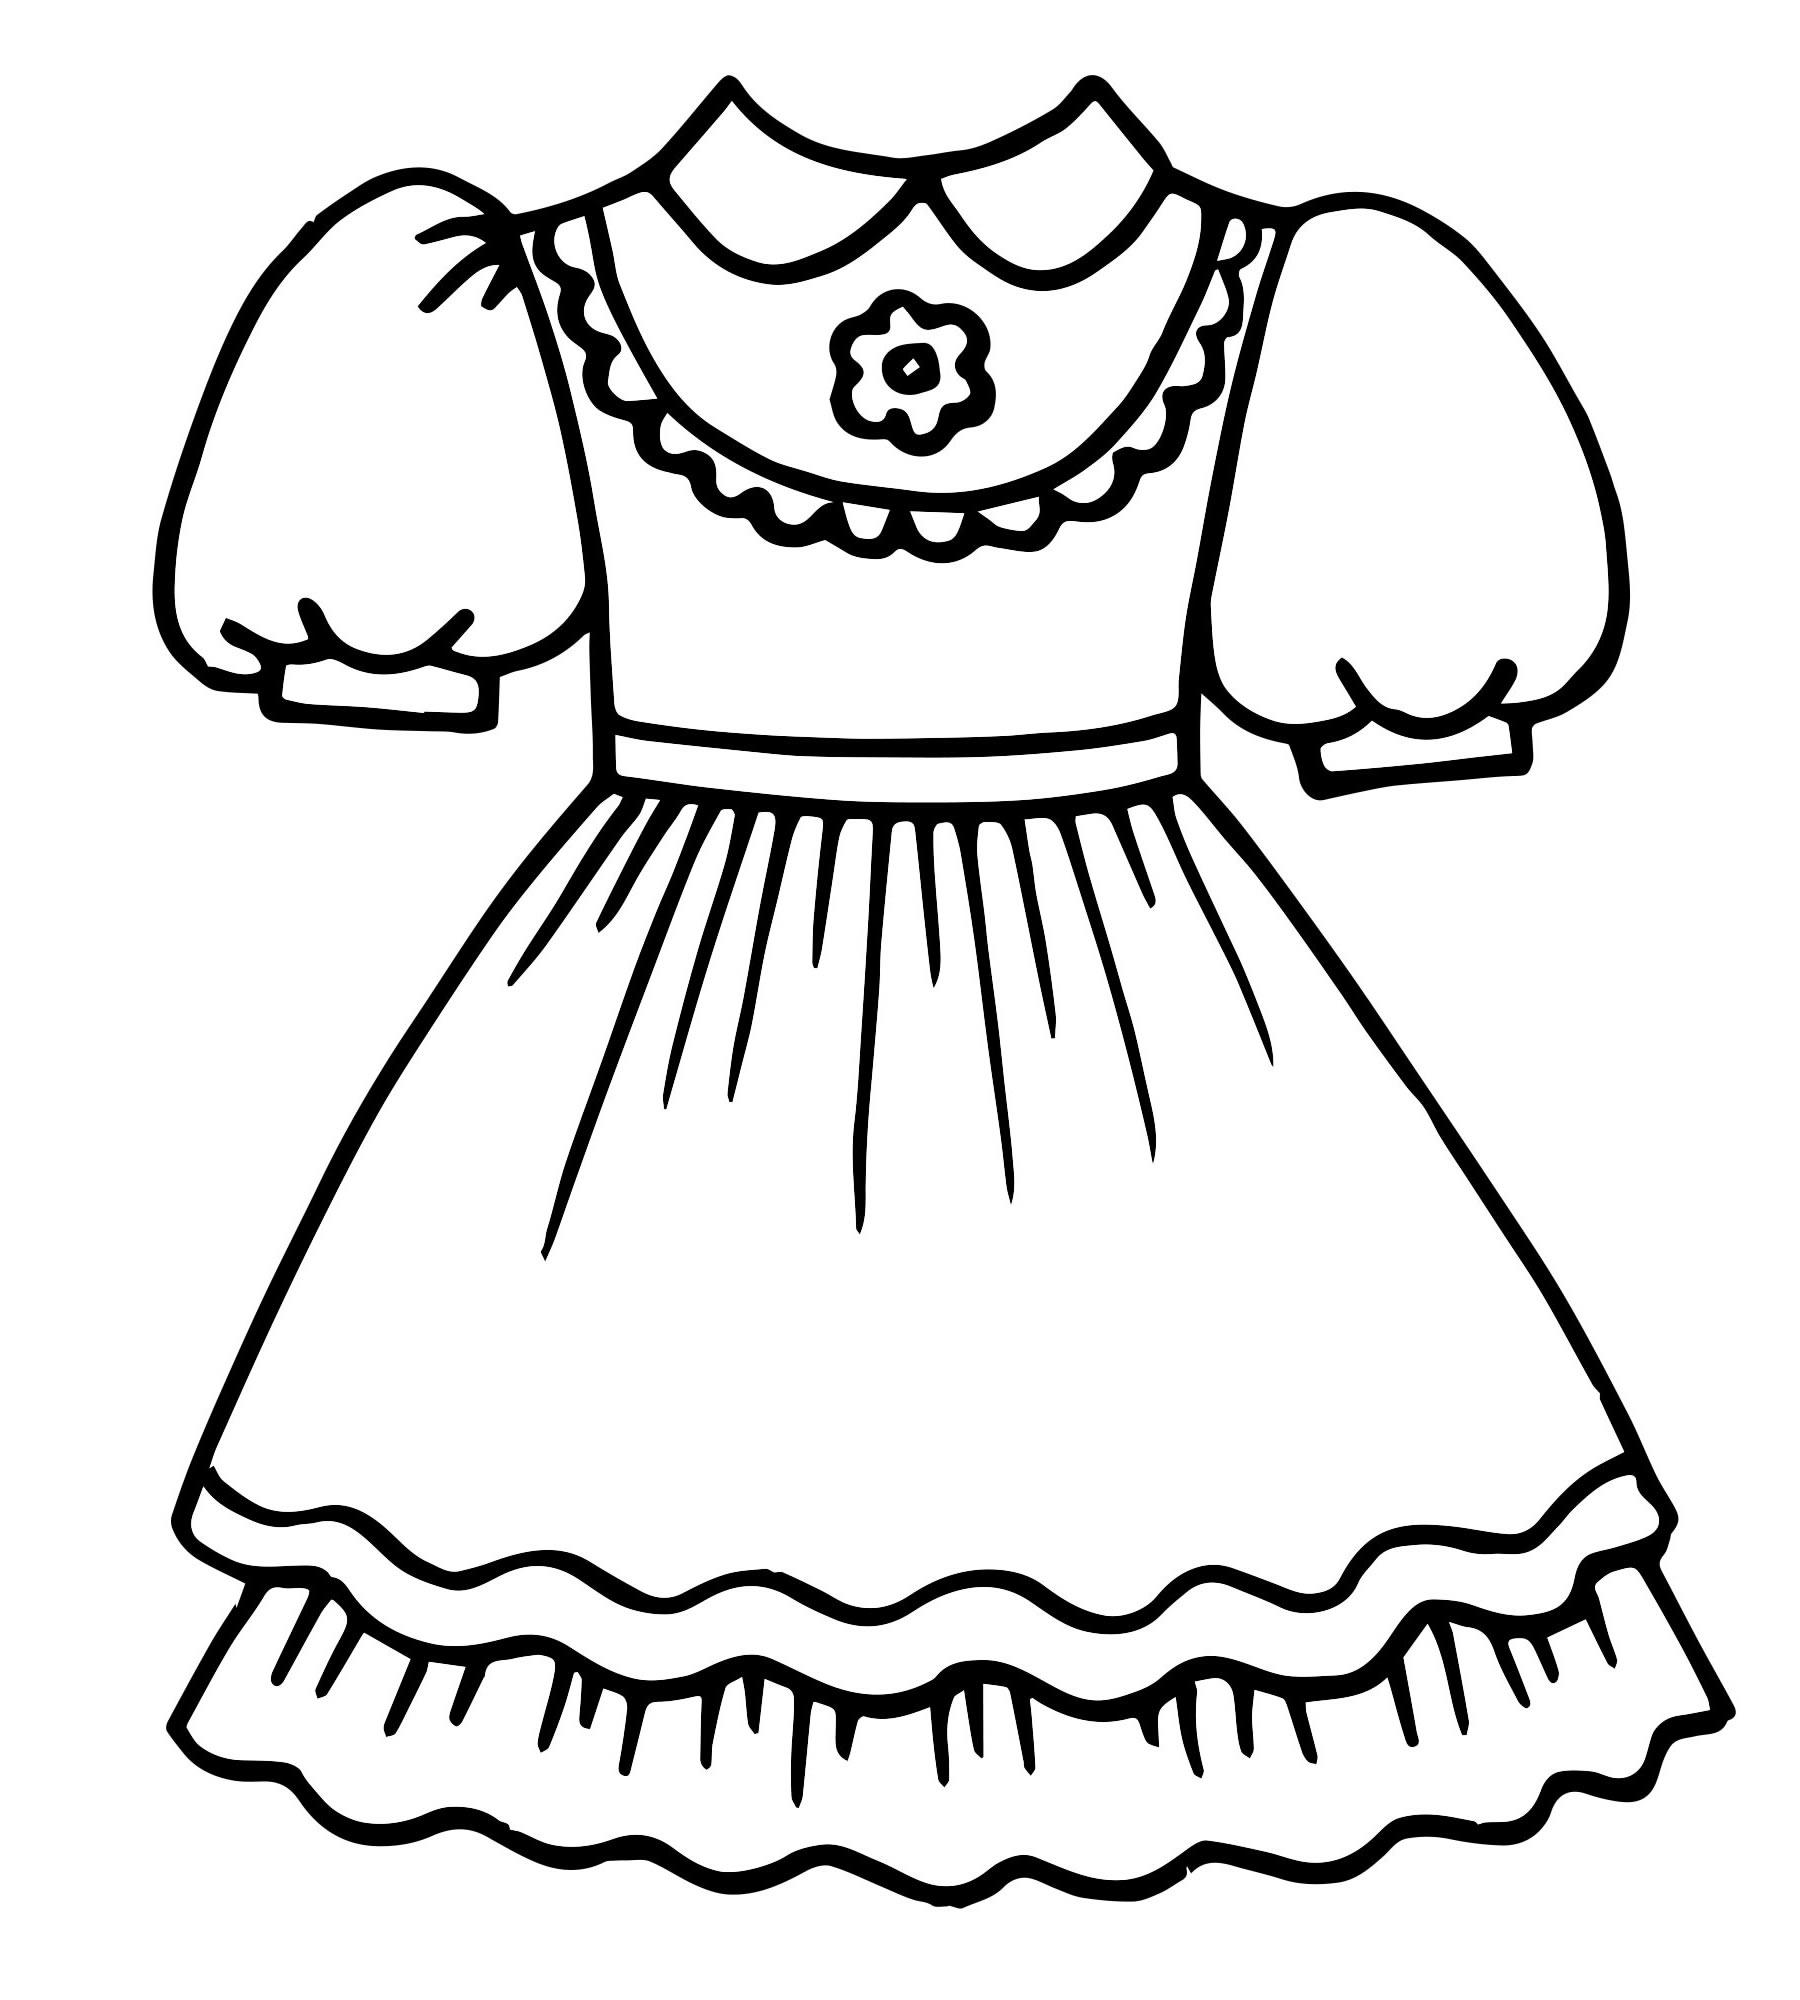 Детское платье раскраска для детей